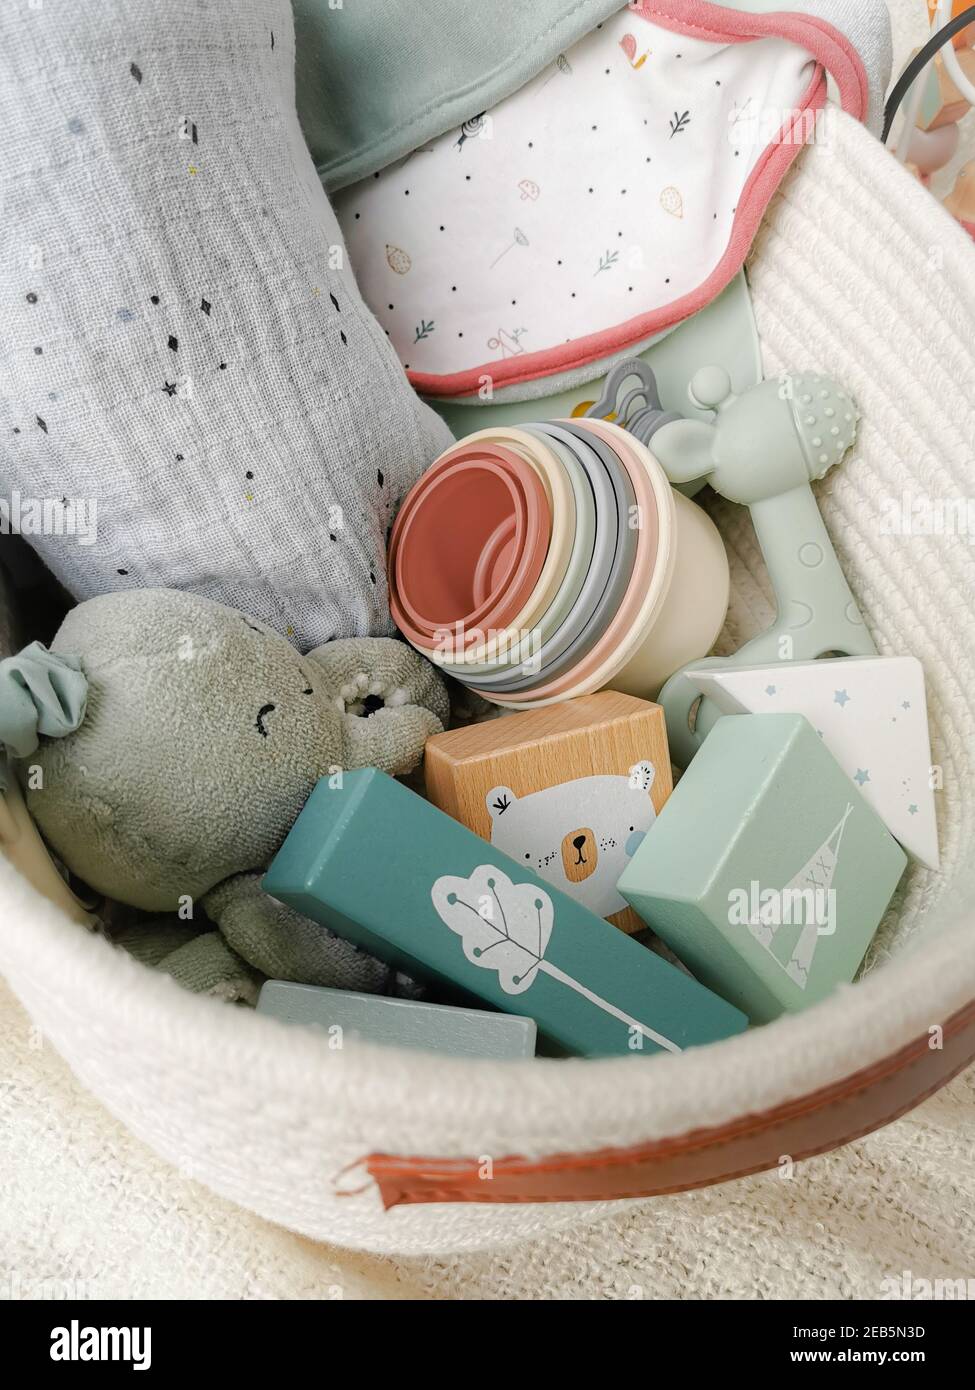 Set regalo neutro di genere per un bambino doccia con giocattoli in colori tenui. Parenting neutrale dal genere. Foto Stock